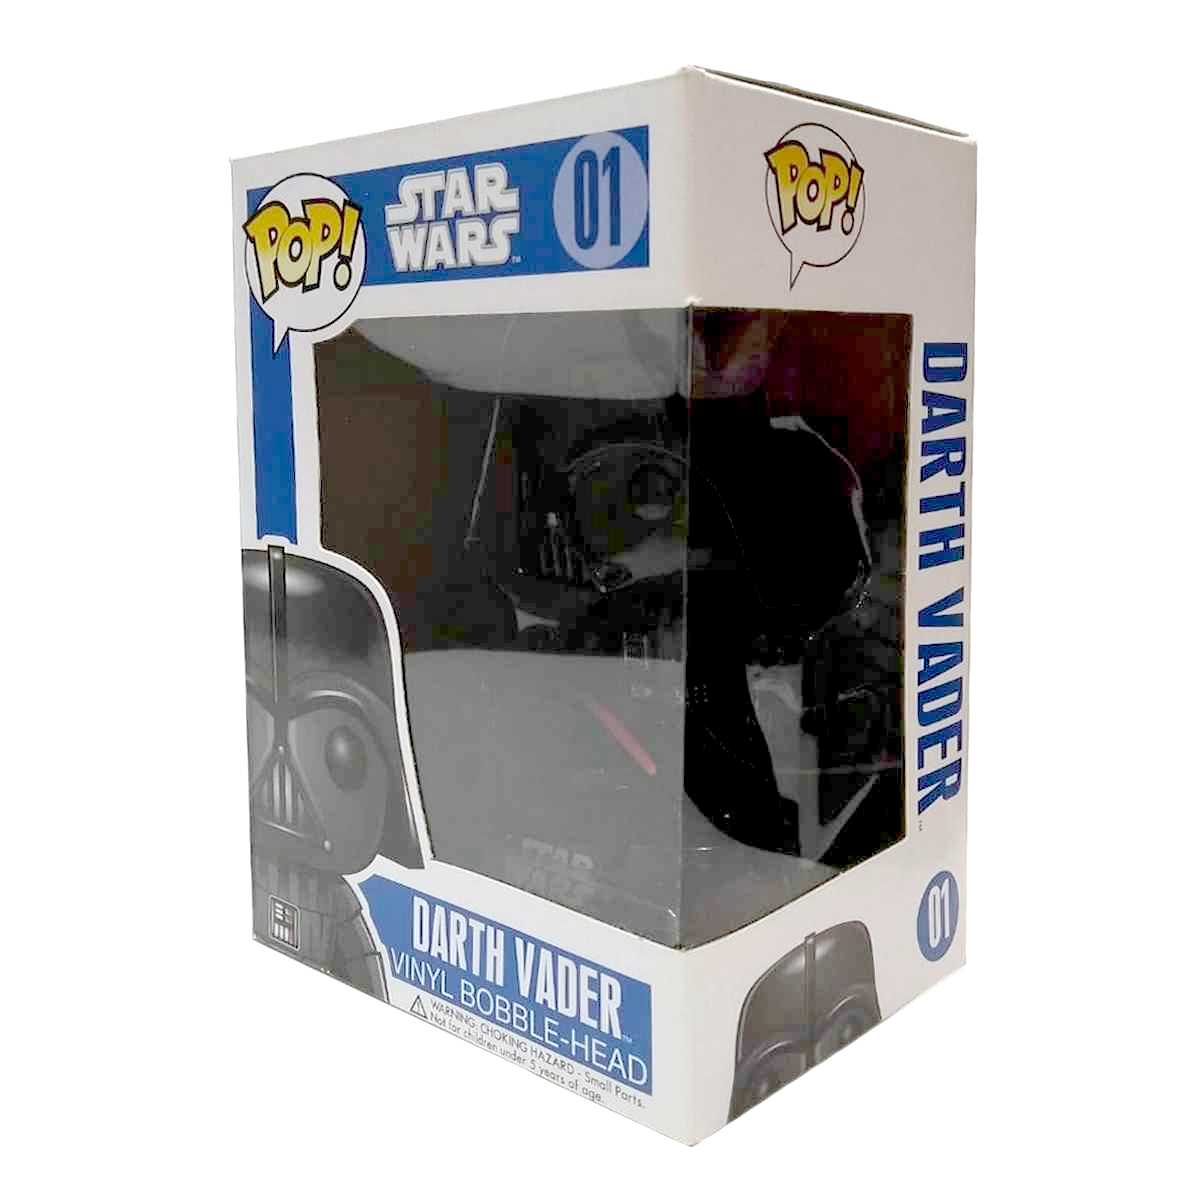 Funko Pop! Movies Star Wars Darth Vader caixa LETRA GRANDE vinyl figure número 01 VAULTED